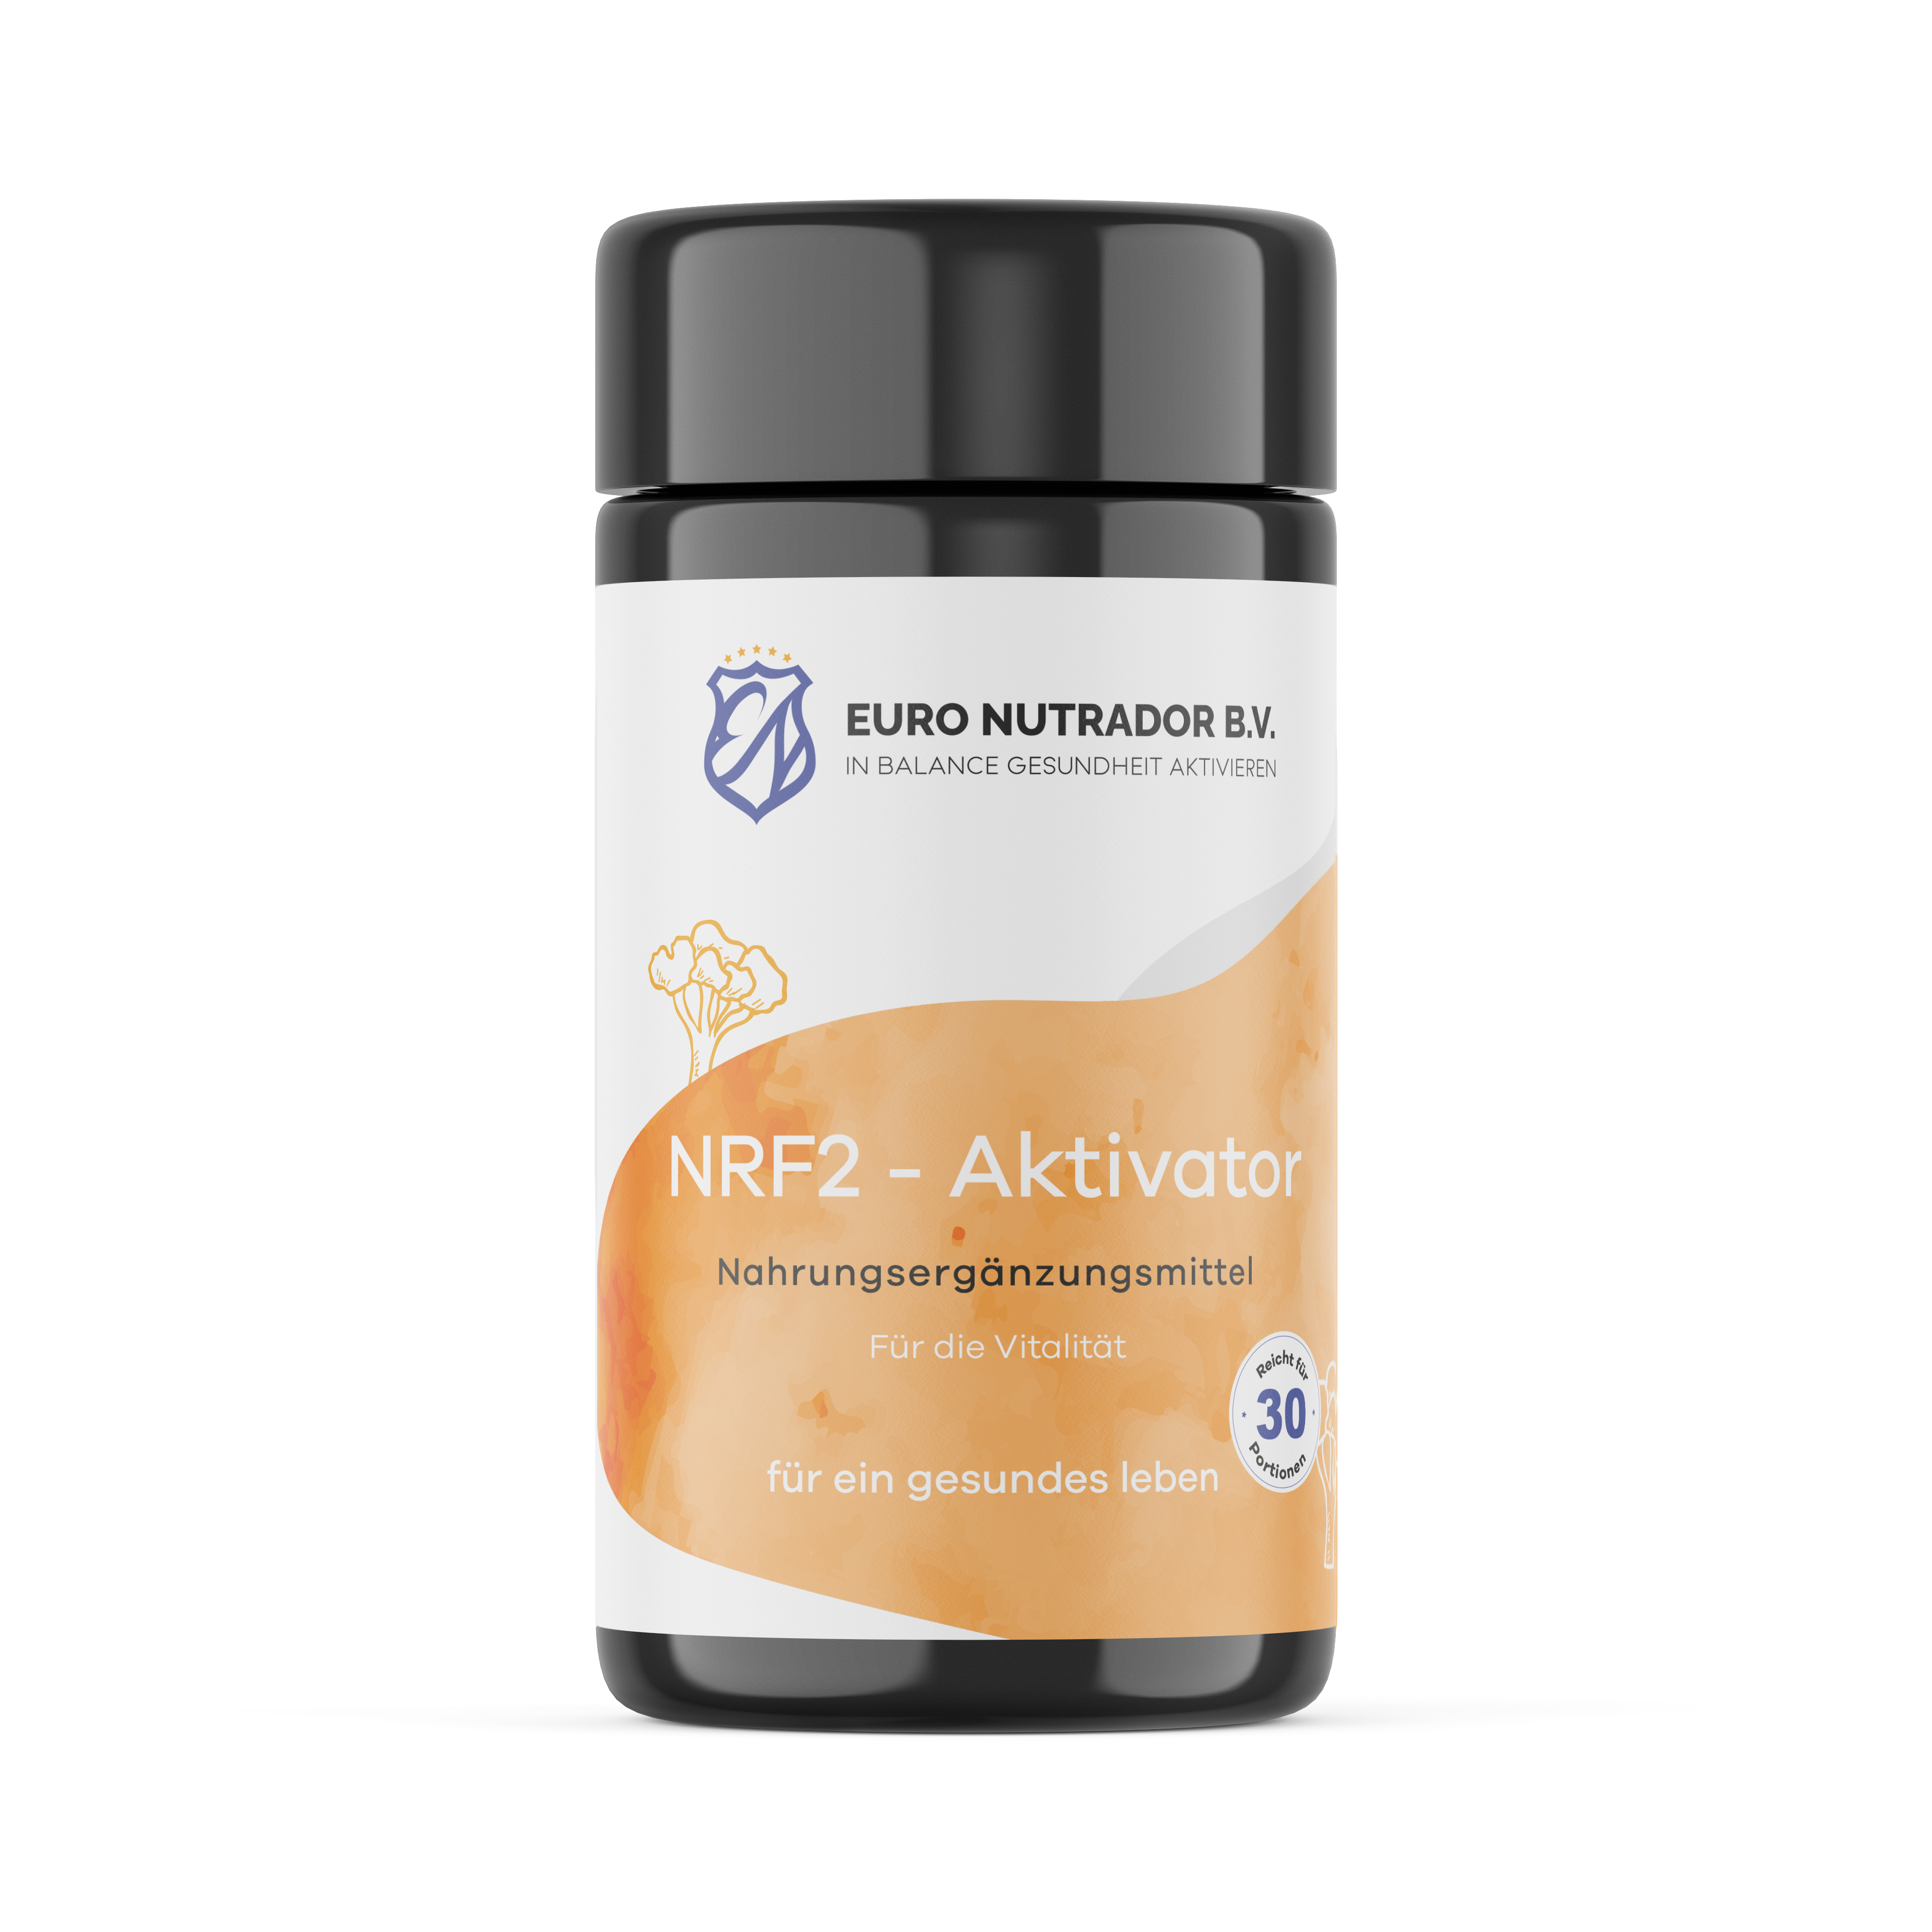 NRF2 - activator